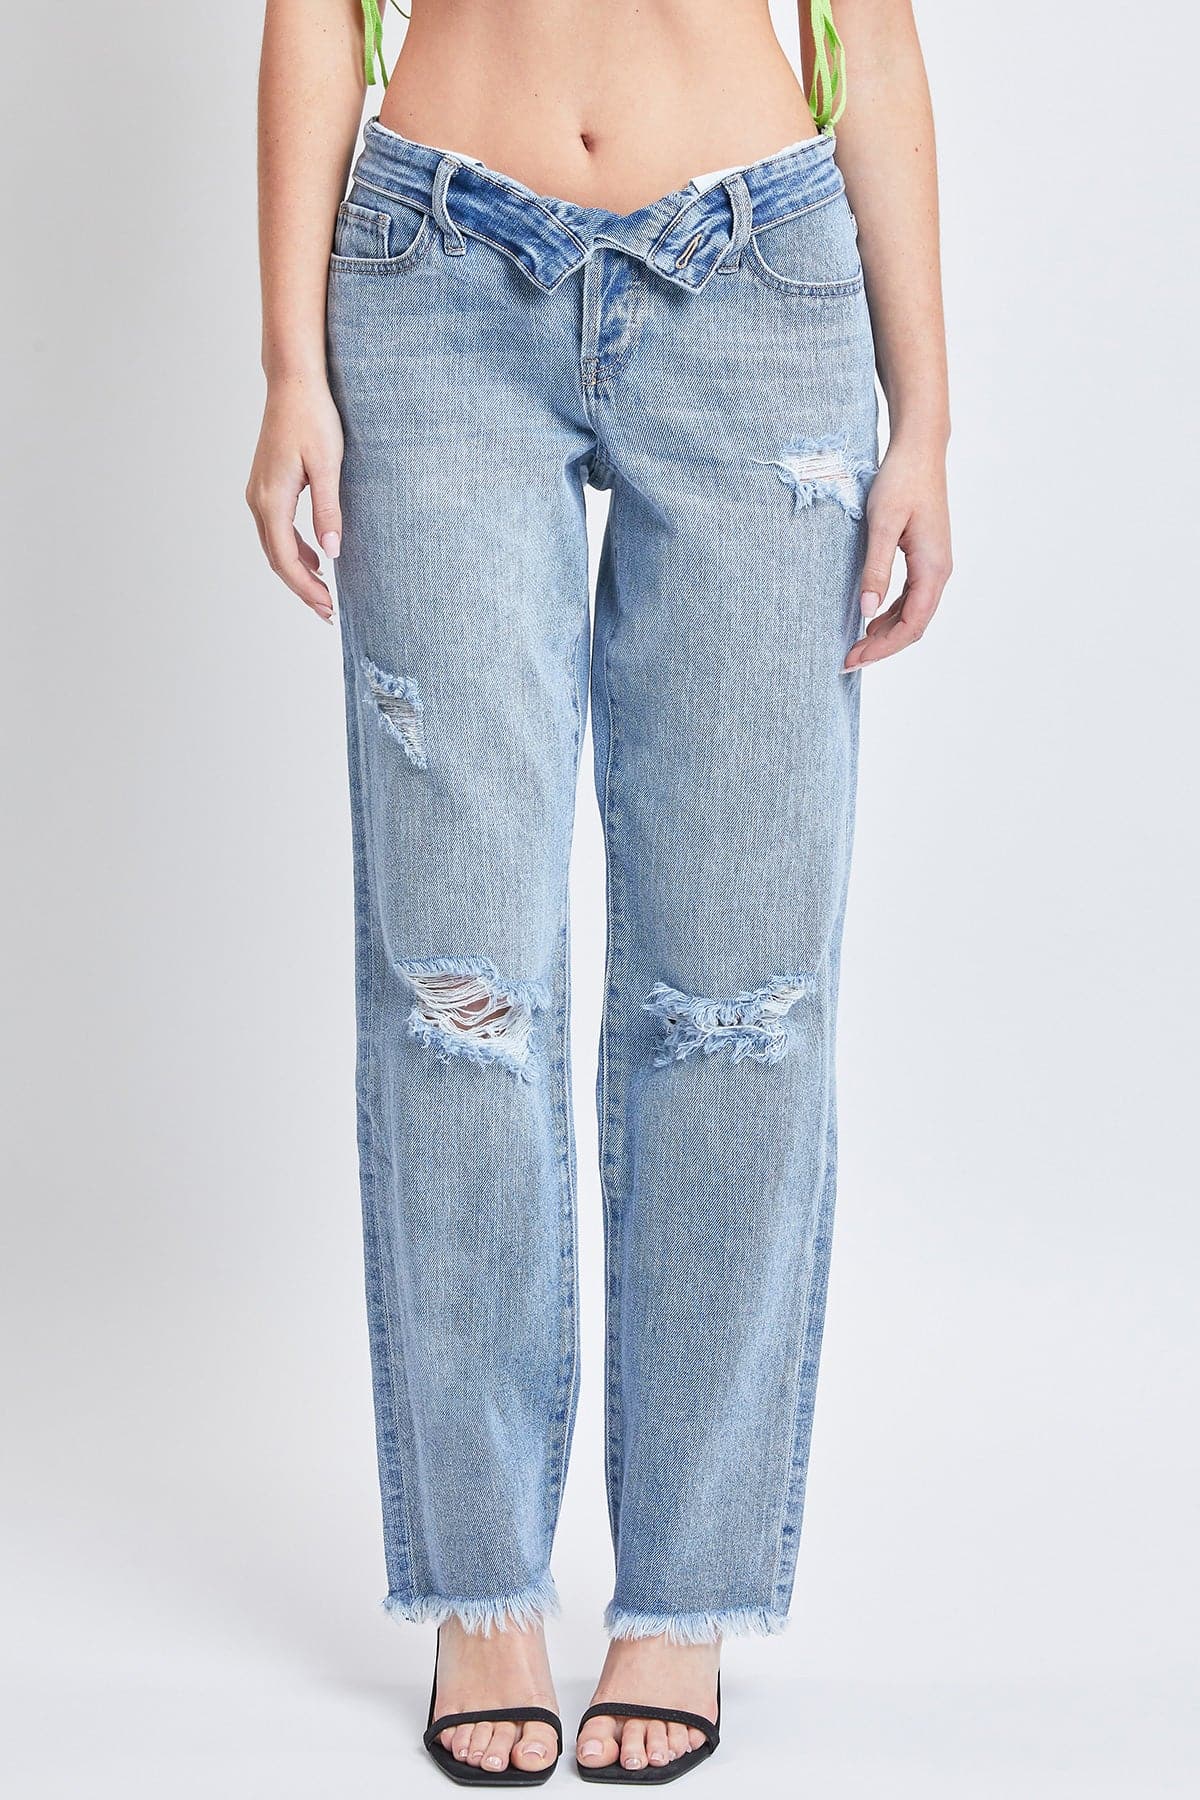 YMI Women's Size 0 w23 Dark Blue Denim Thick Stitch Capri Jeans